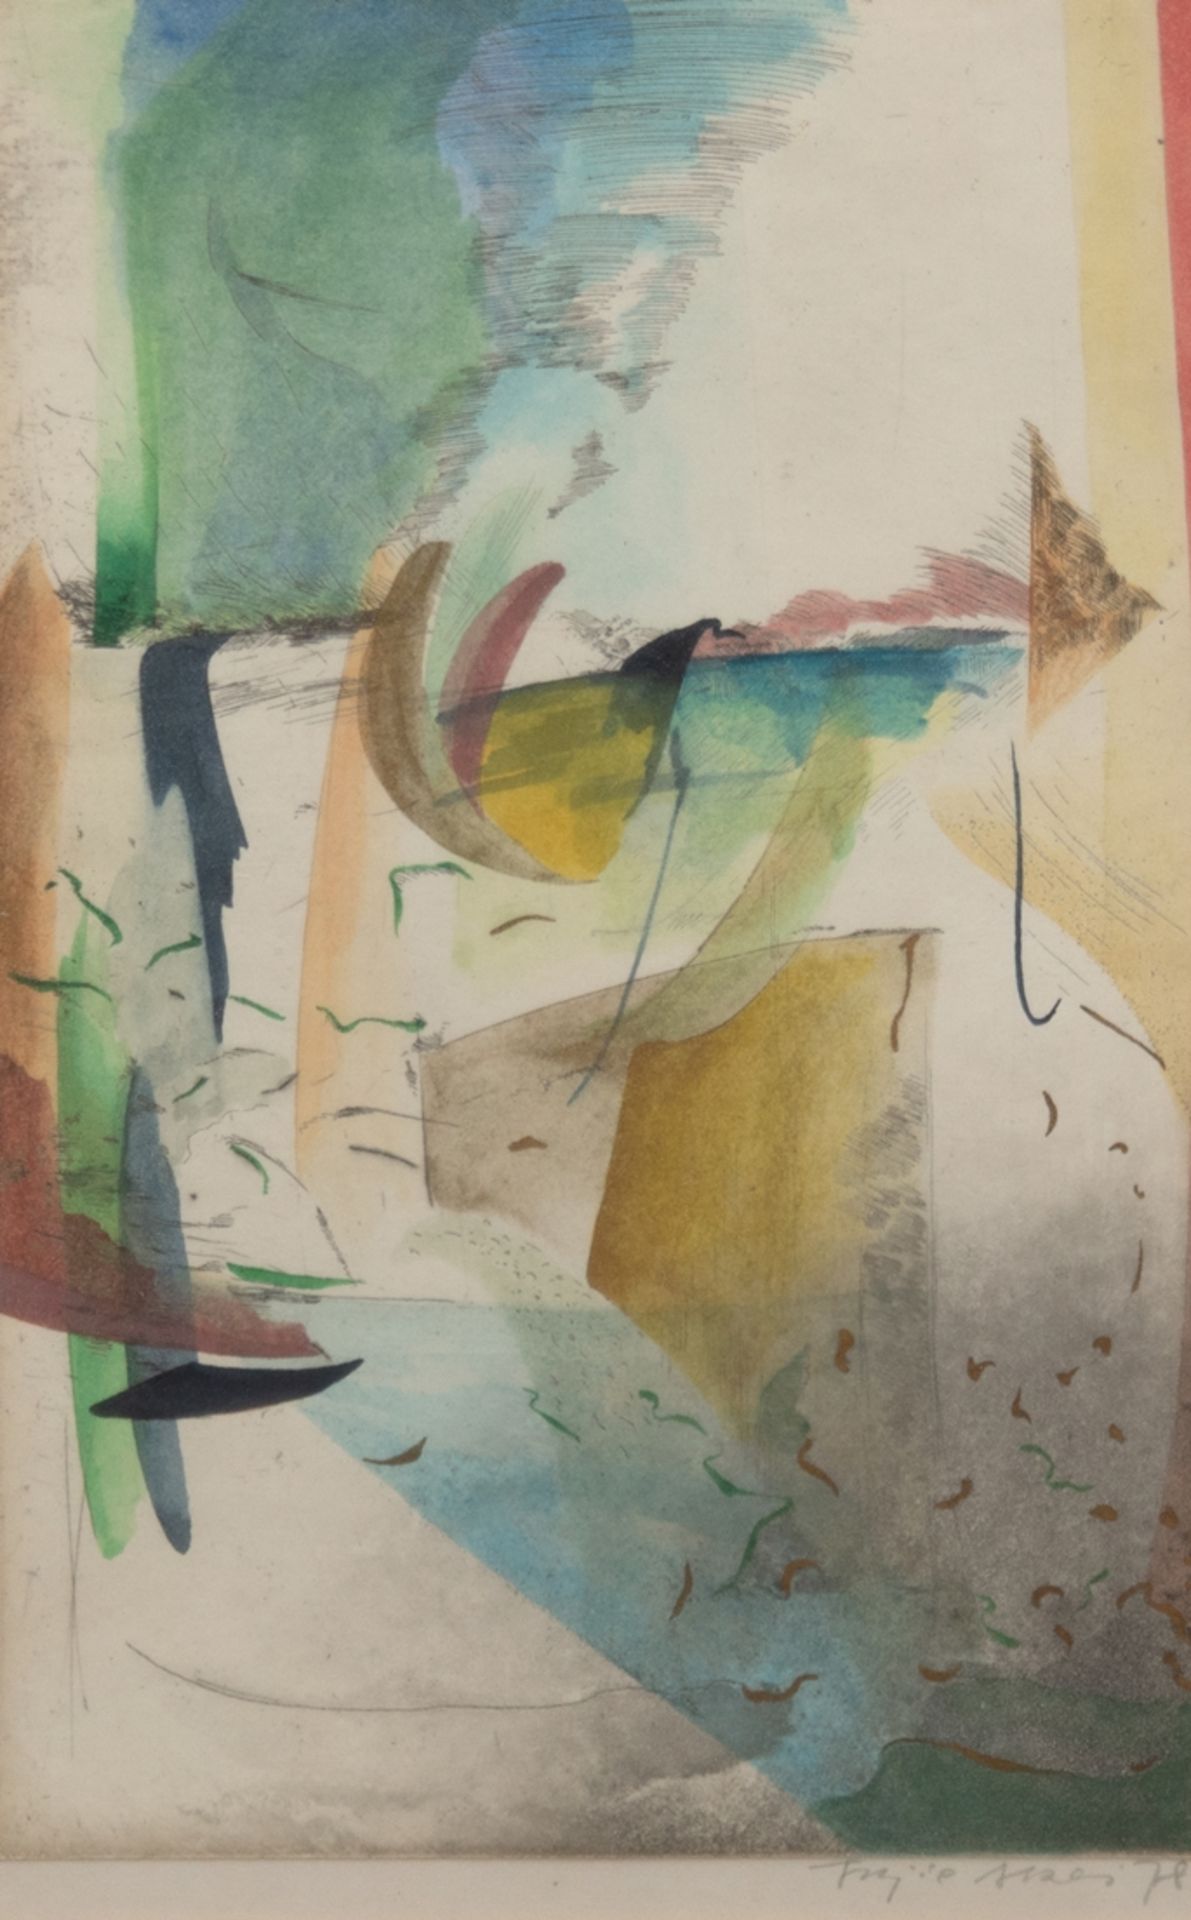 Akai, Fujio (geb. 1945 Padang/Sumatra) "Abstrakte Komposition I", Aquarell, sign. u. dat. 1978 u.r.